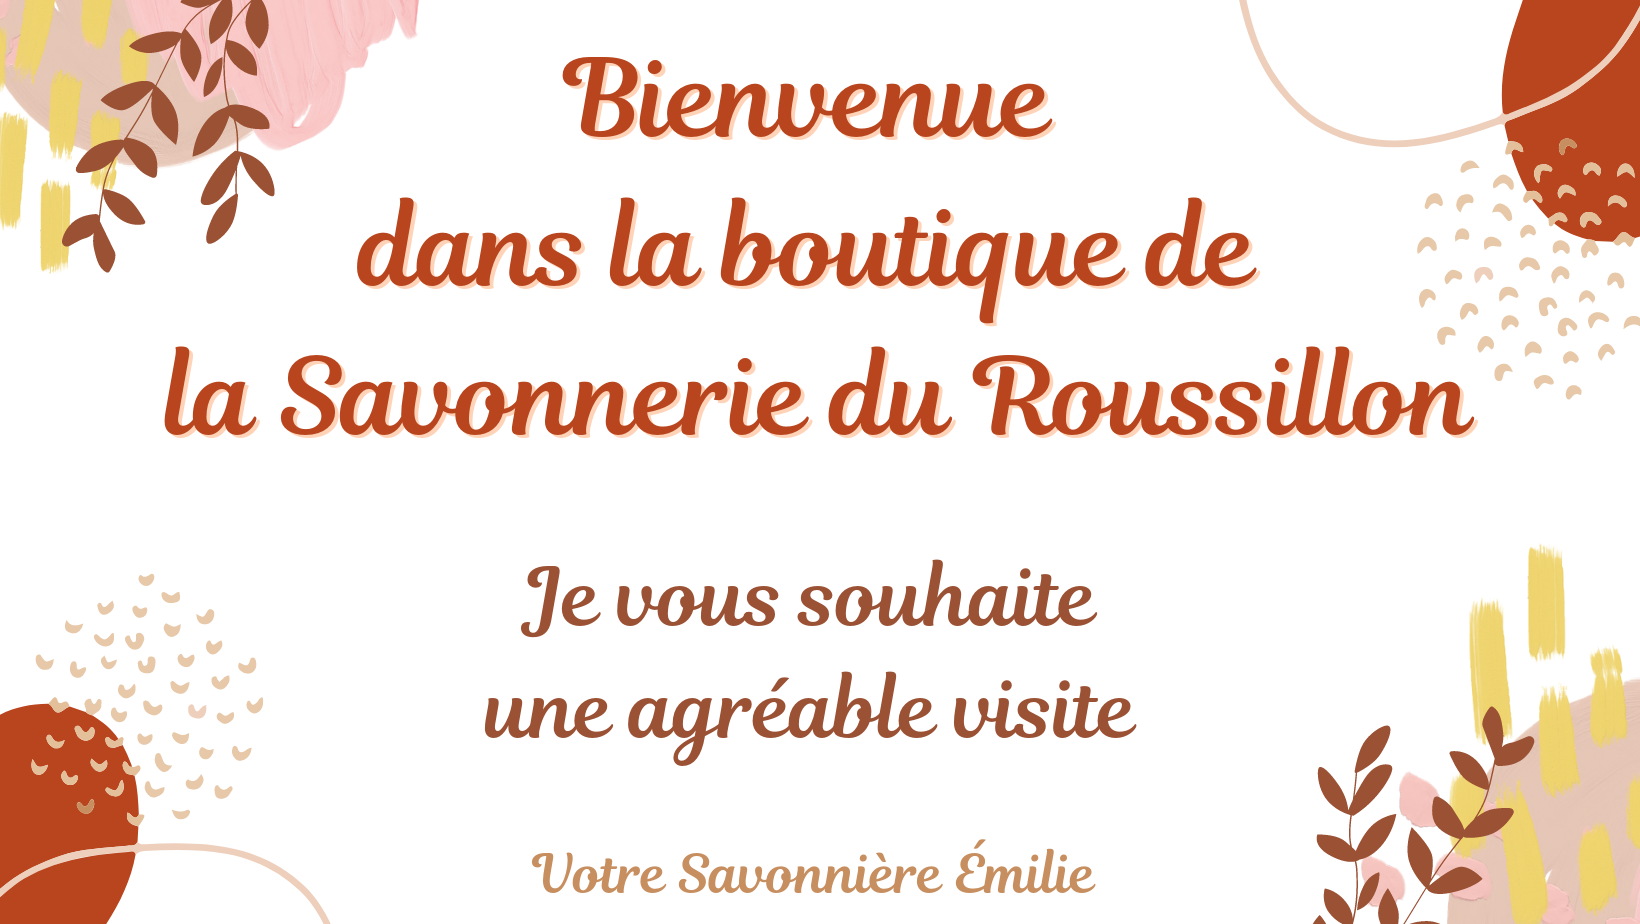 Bienvenue à La Savonnerie du Roussillon